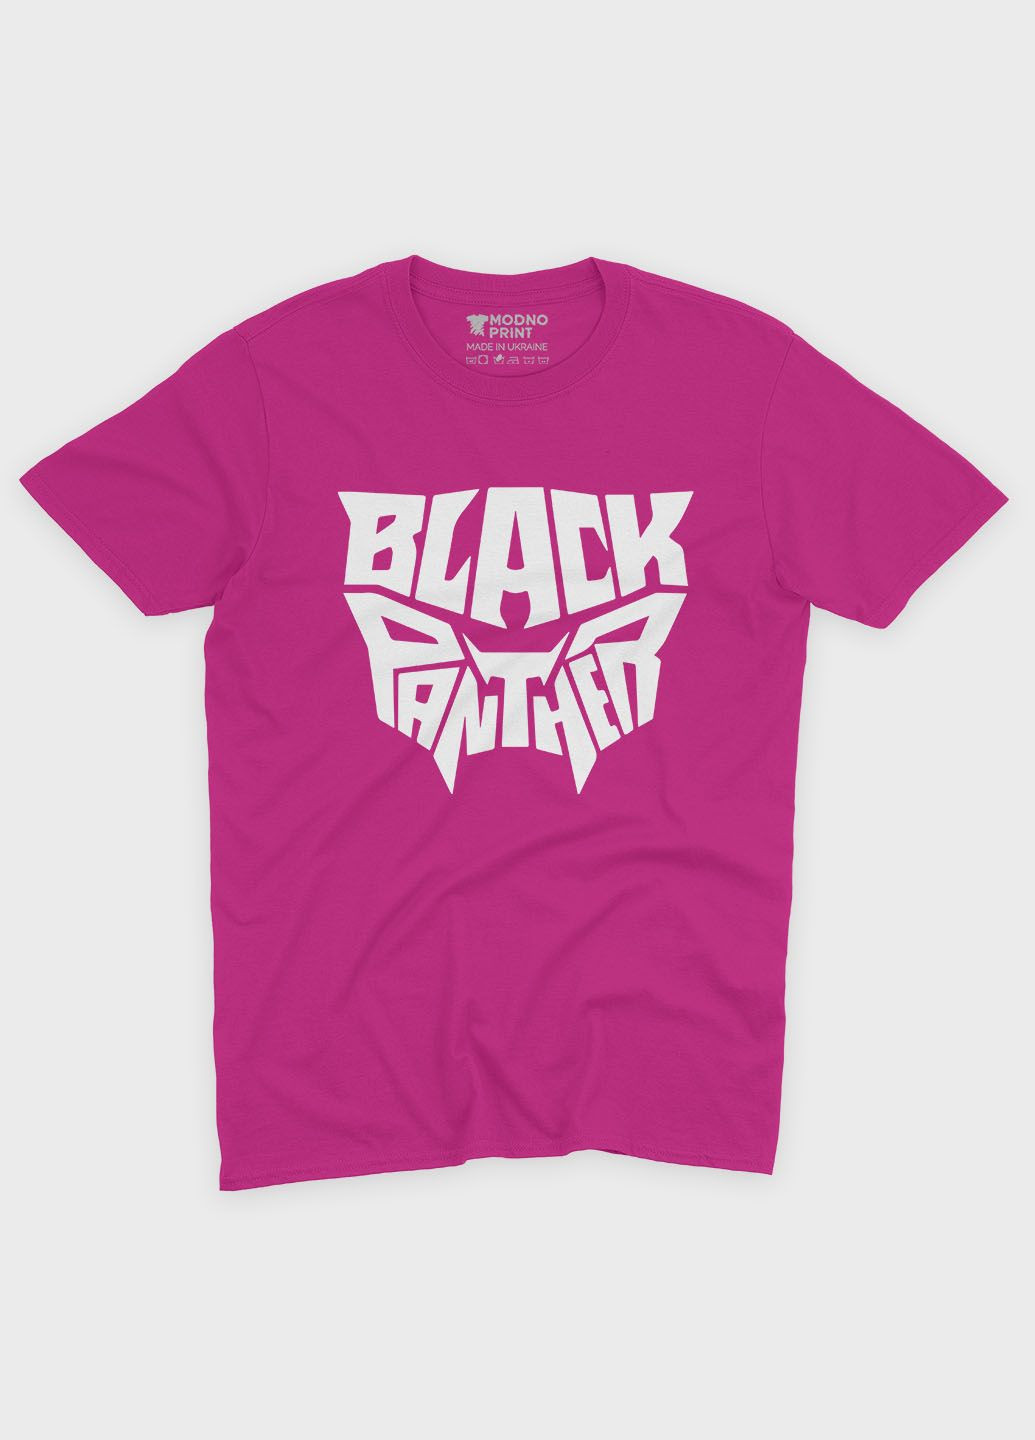 Розовая демисезонная футболка для девочки с принтом супергероя - черная пантера (ts001-1-fuxj-006-027-006-g) Modno